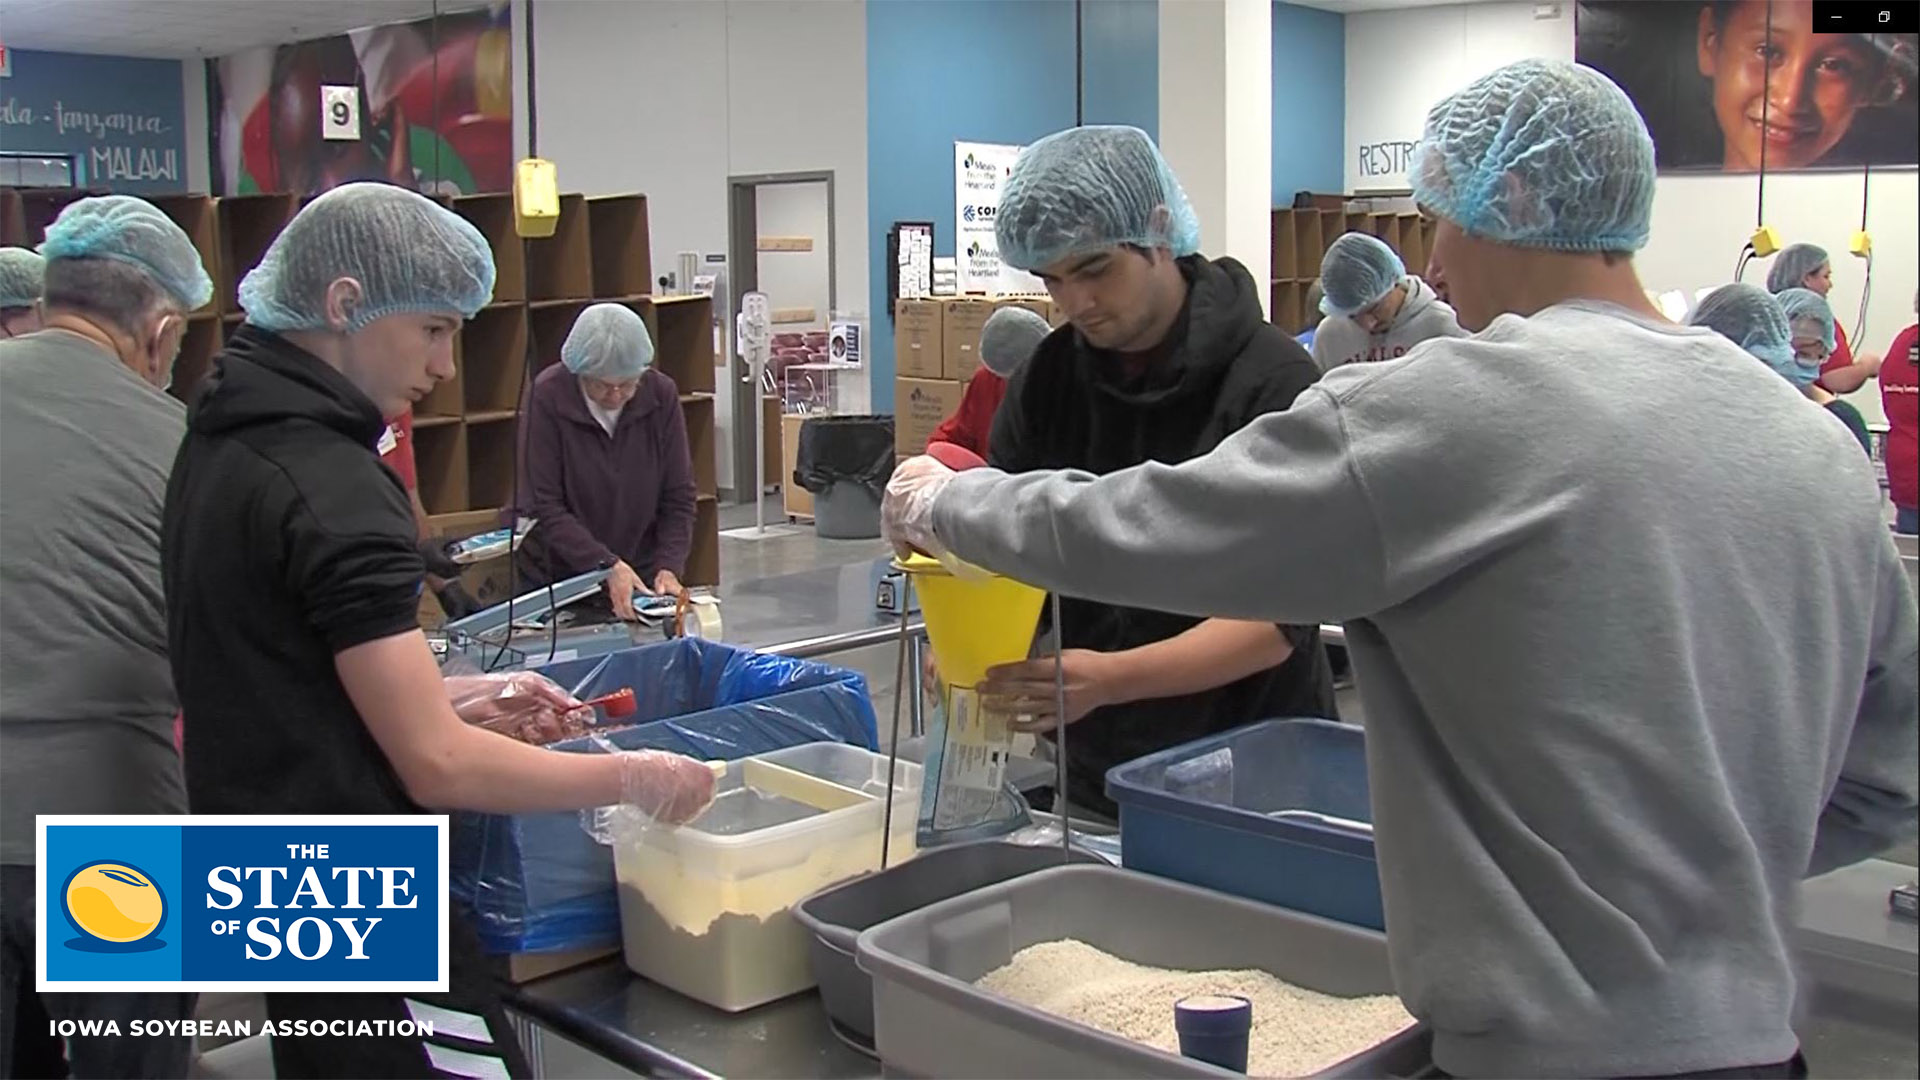 Volunteers packaging food for starving children